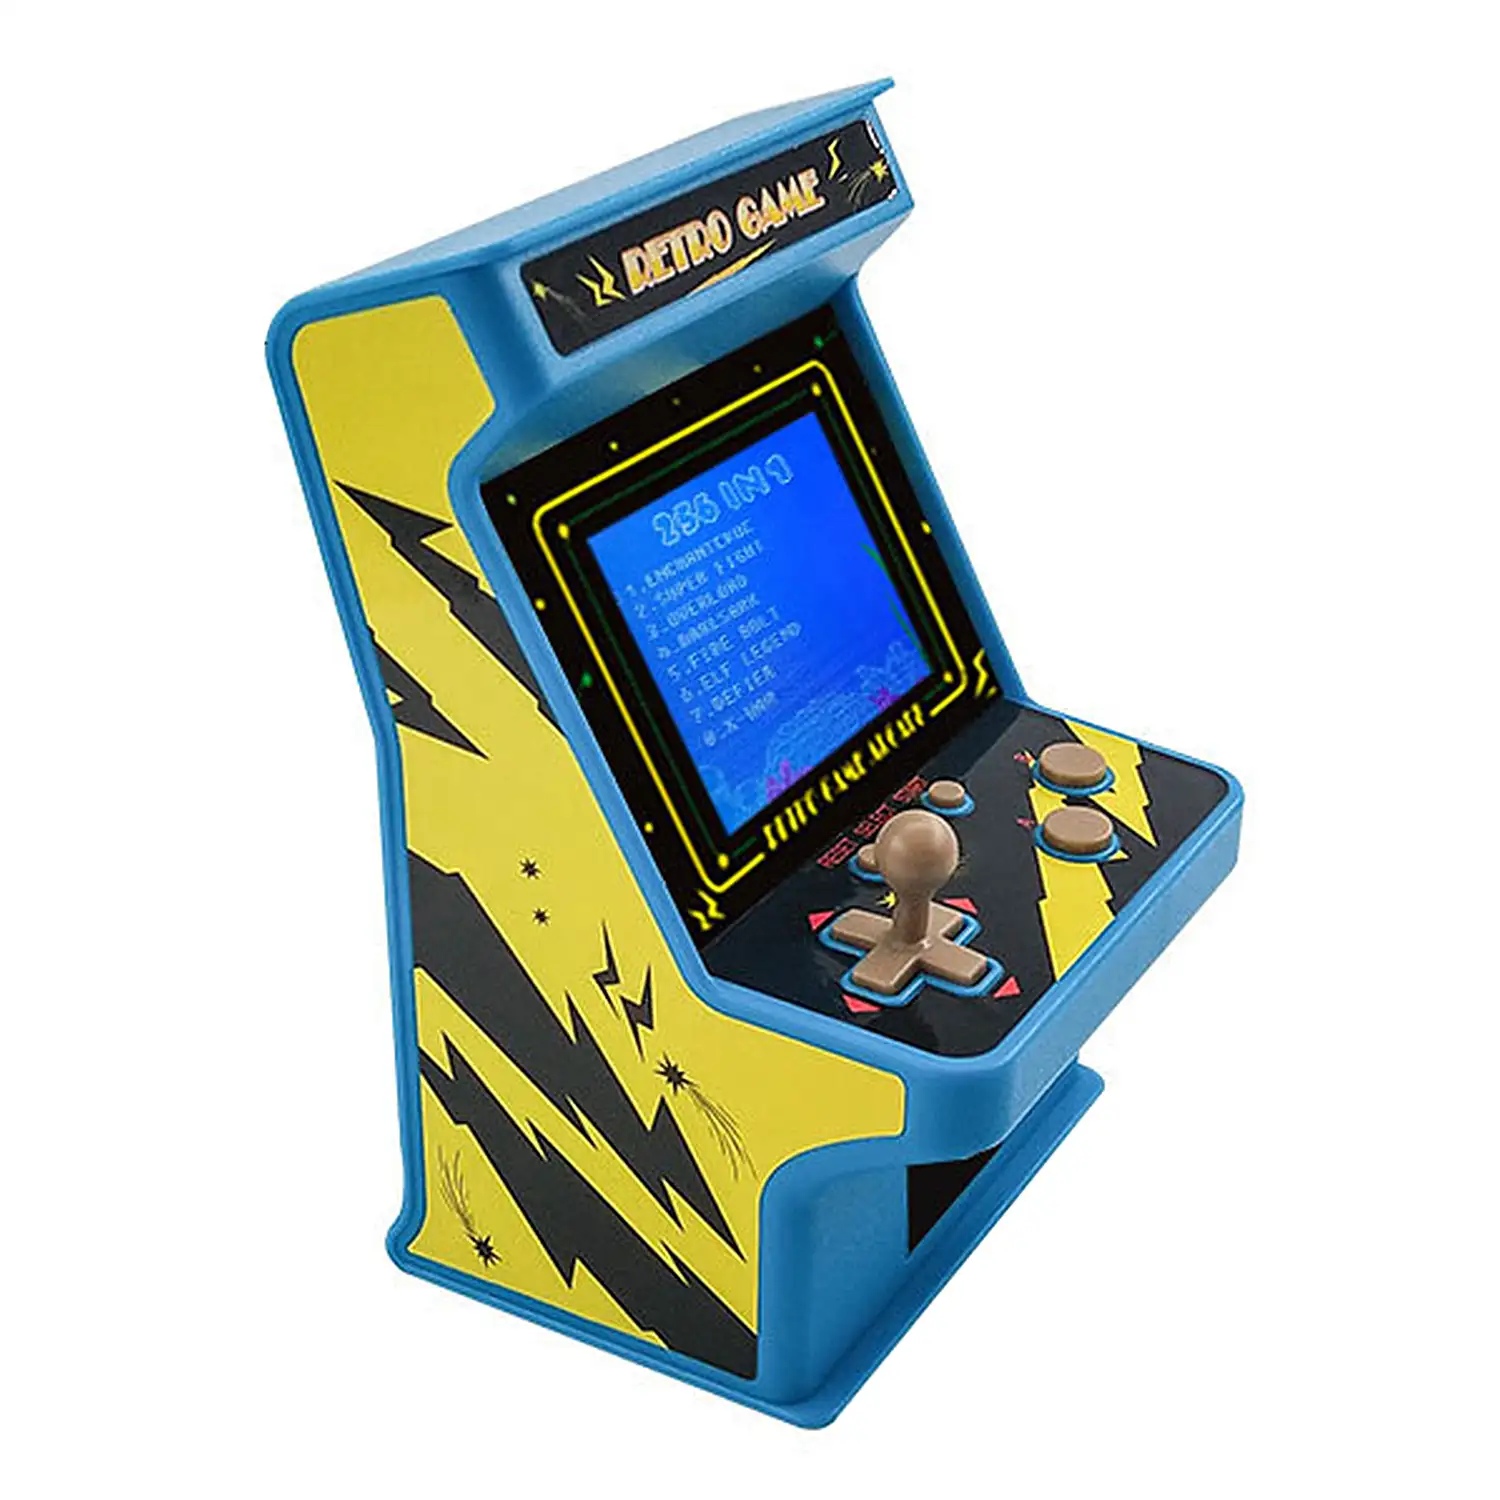 Consola Arcade GC18 máquina recreativa mini, portátil con 256 juegos. Pantalla 2,8 LCD.